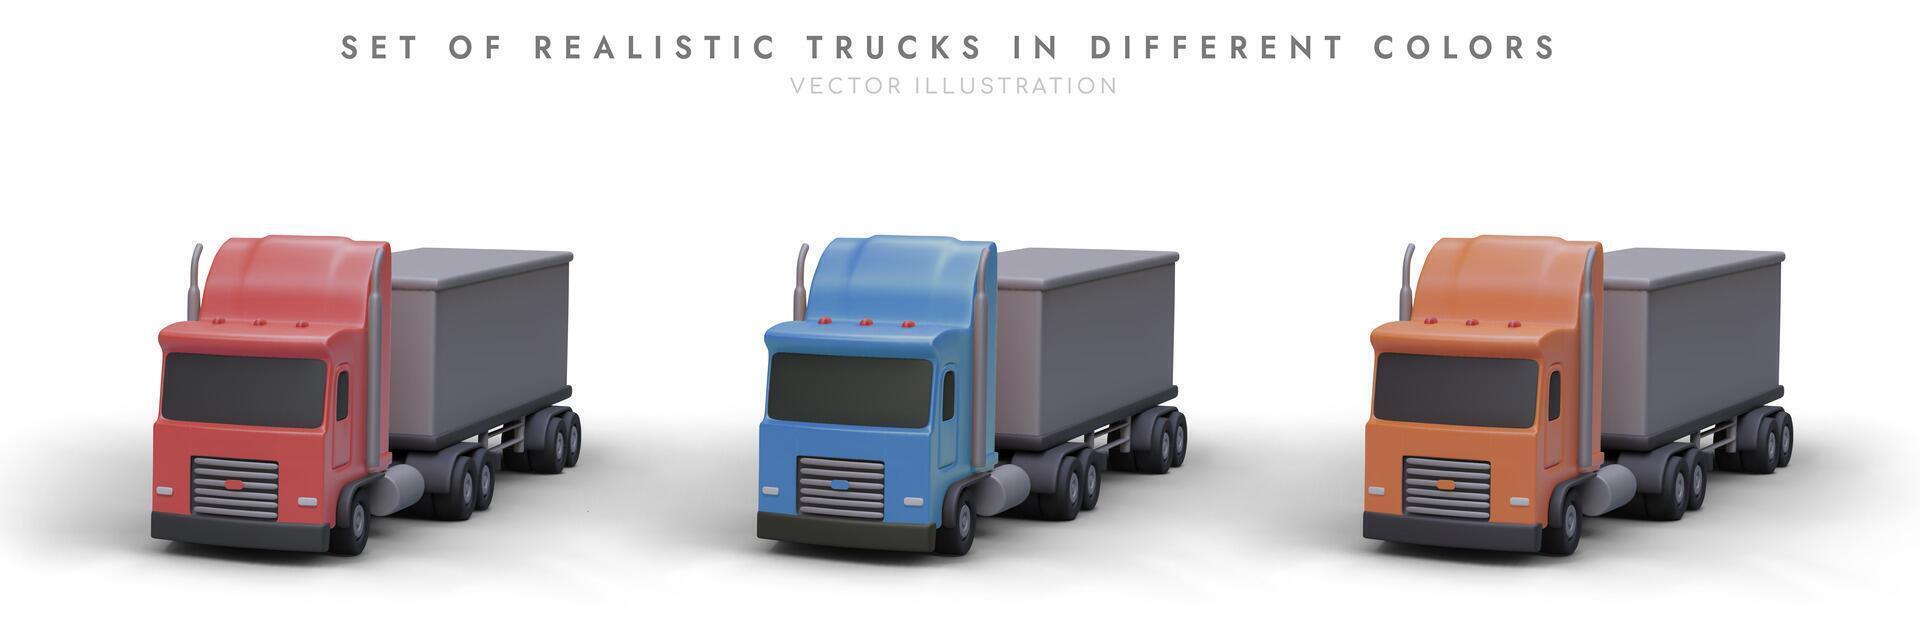 einstellen von realistisch Lastwagen im anders Farben. Illustration zum Werbung Logistik Unternehmen vektor